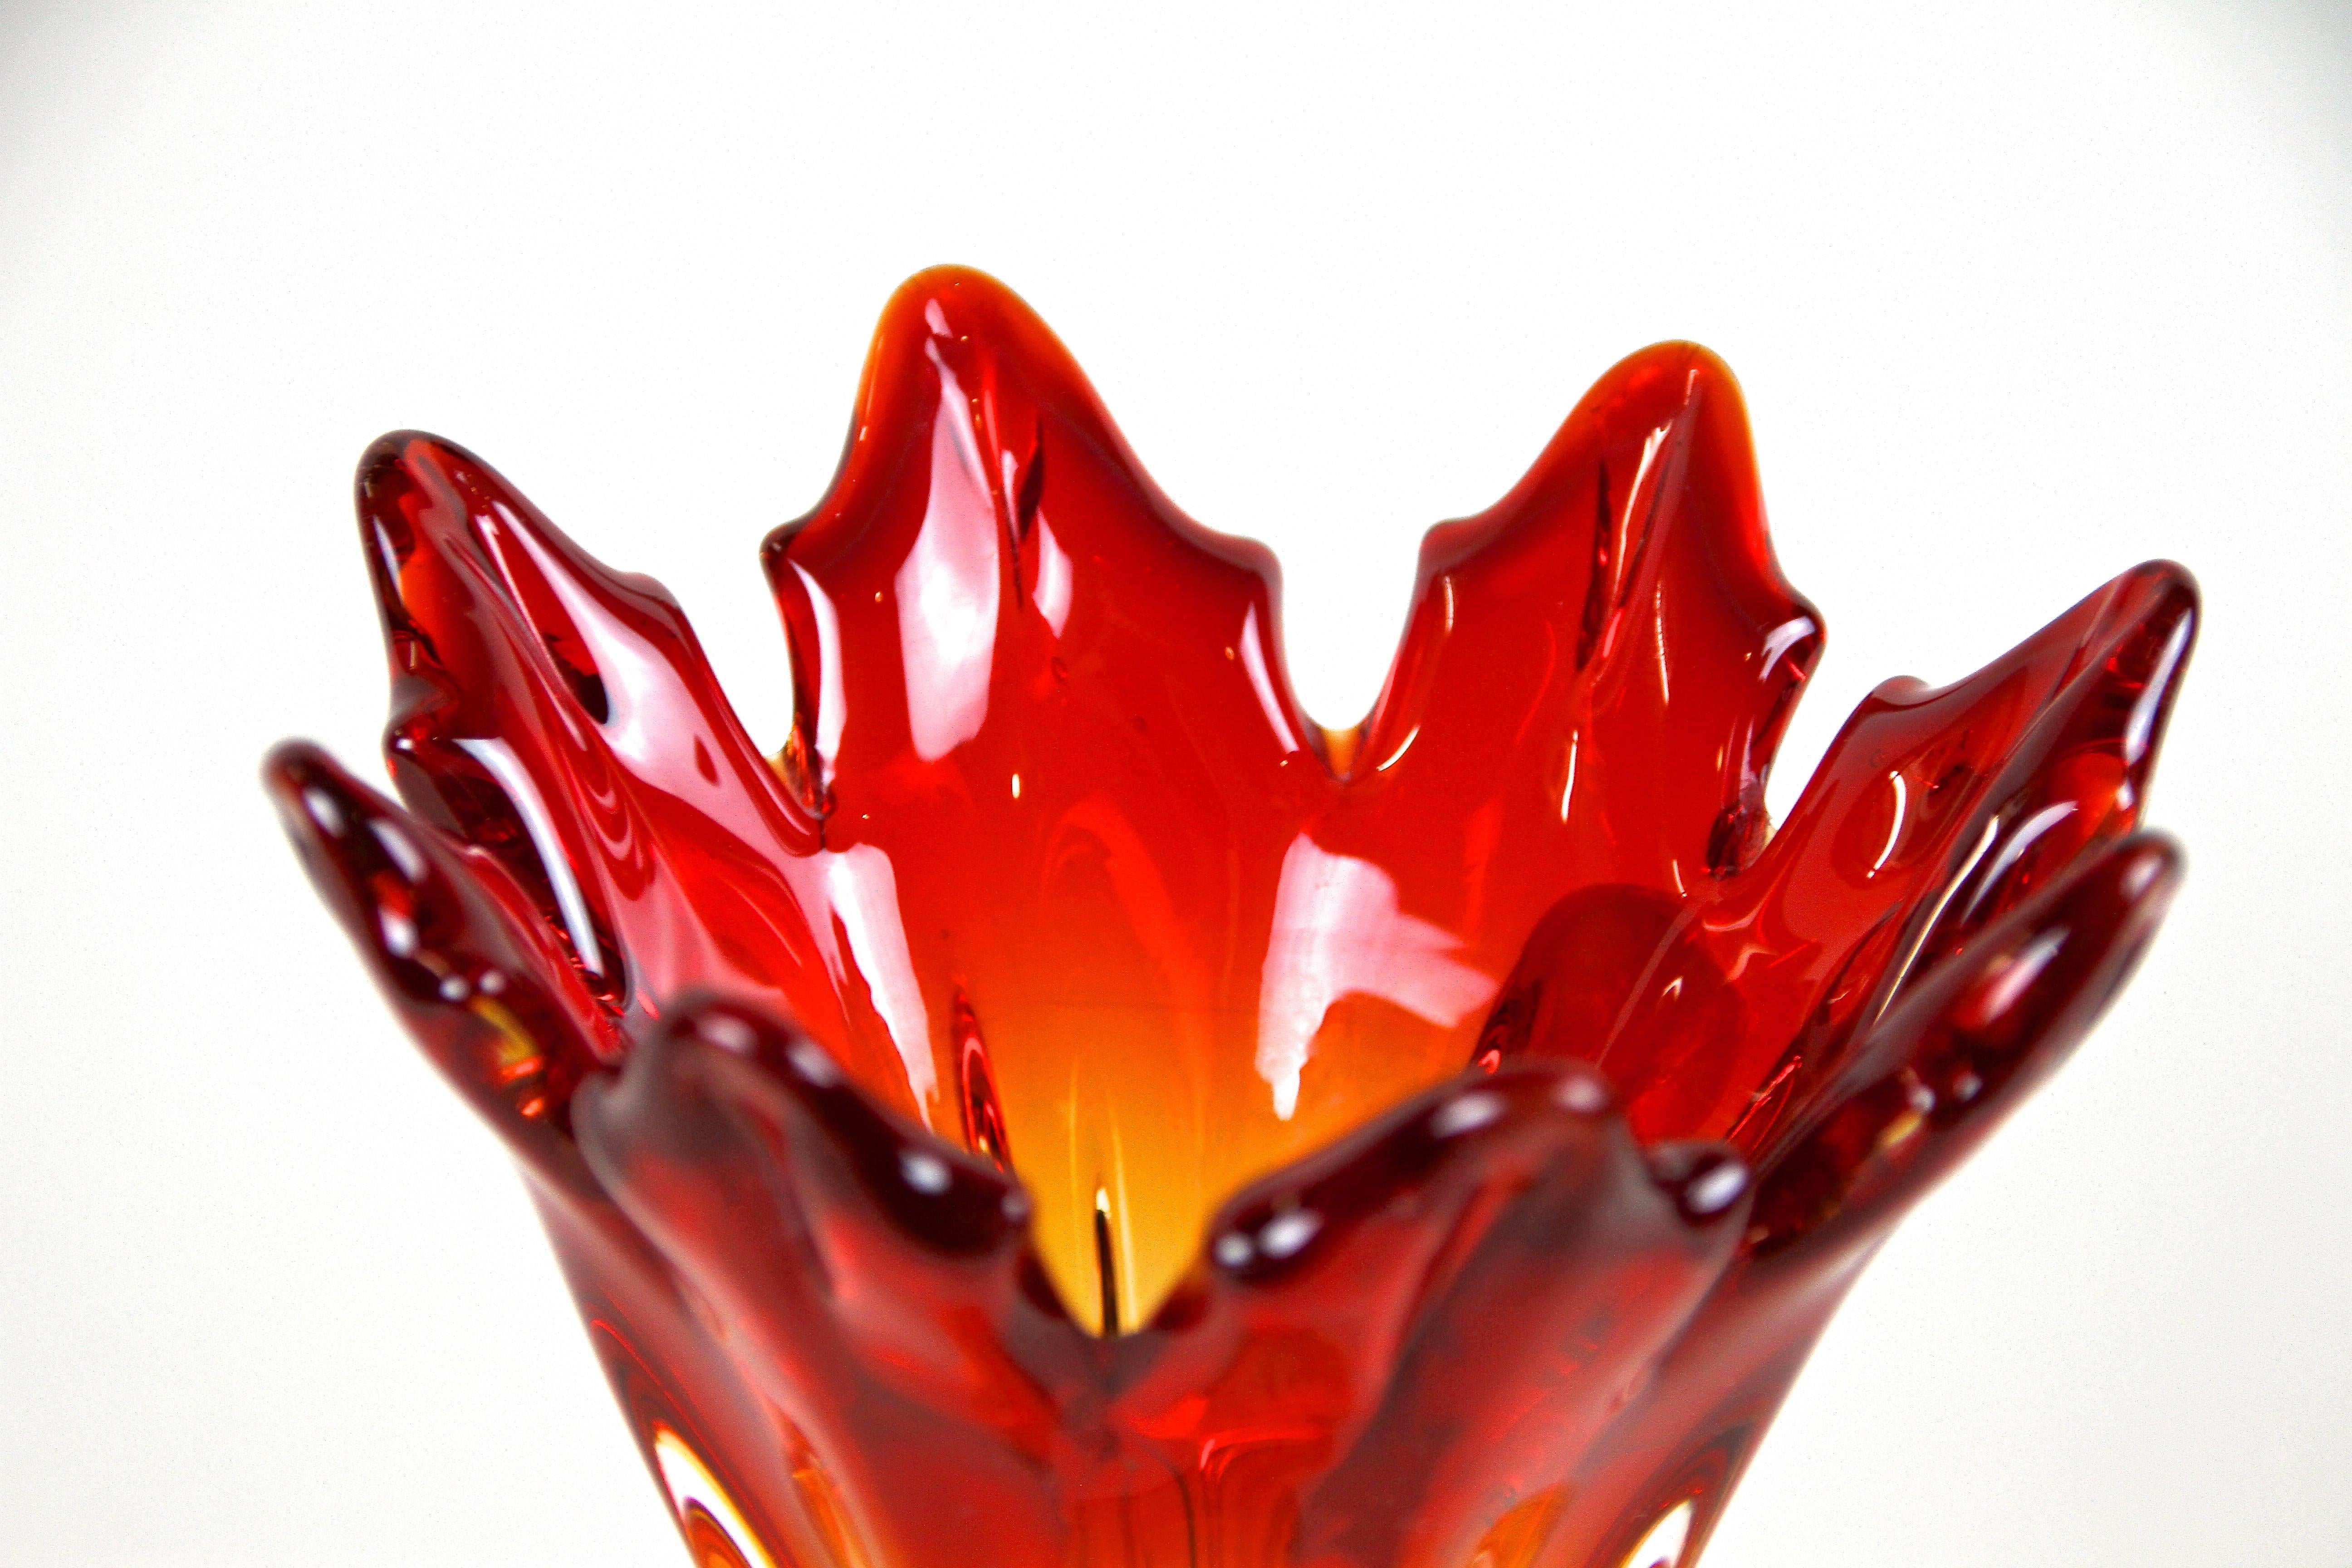 Vase coloré en verre de Murano rouge/orange du milieu du siècle, provenant des ateliers d'art verrier renommés de Sommerso sur la petite île de Murano/ Italie. Réalisé avec art vers 1960/70, ce vase en verre de forme fantastique impressionne par son